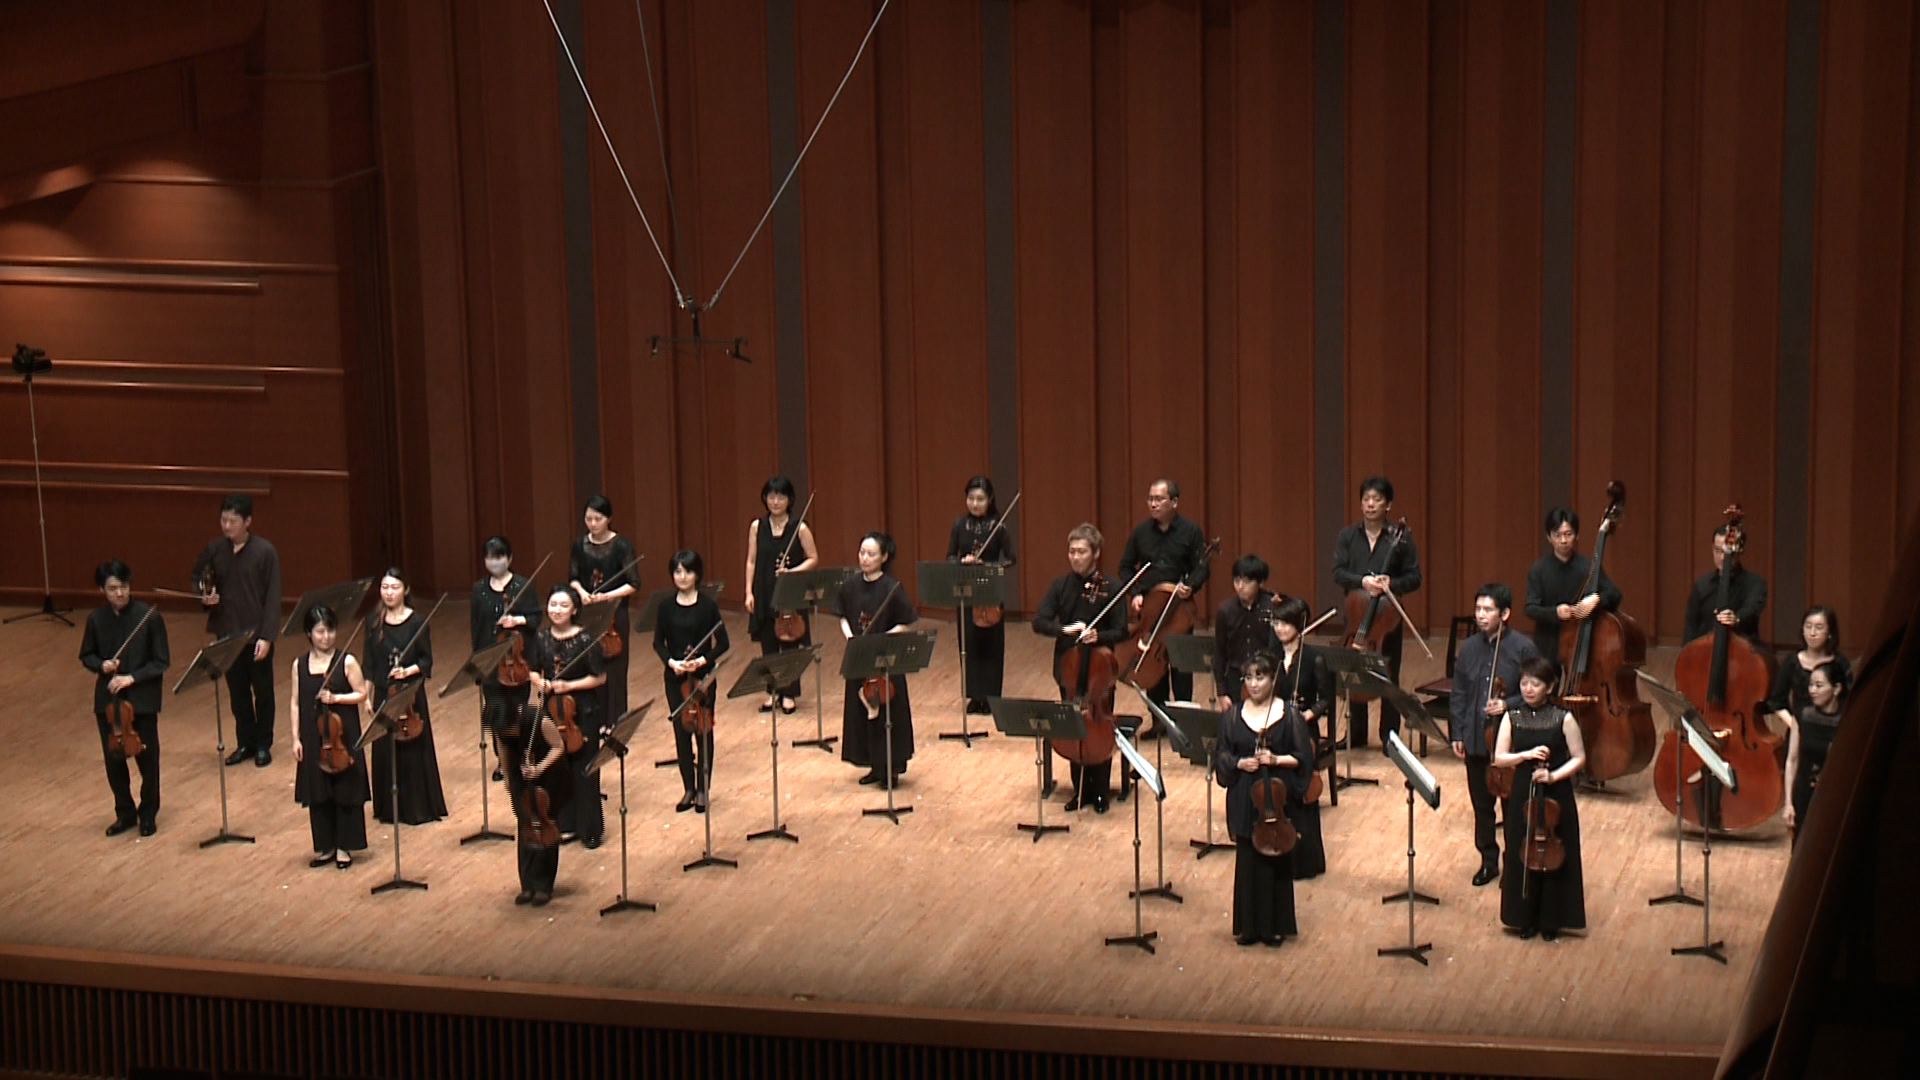 紀尾井ホール室内管弦楽団 グリーグ ：組曲「ホルベアの時代から」 Kioi Hall Chamber Orchestra Tokyo Grieg Suite “From Holberg’s Time”Op.40